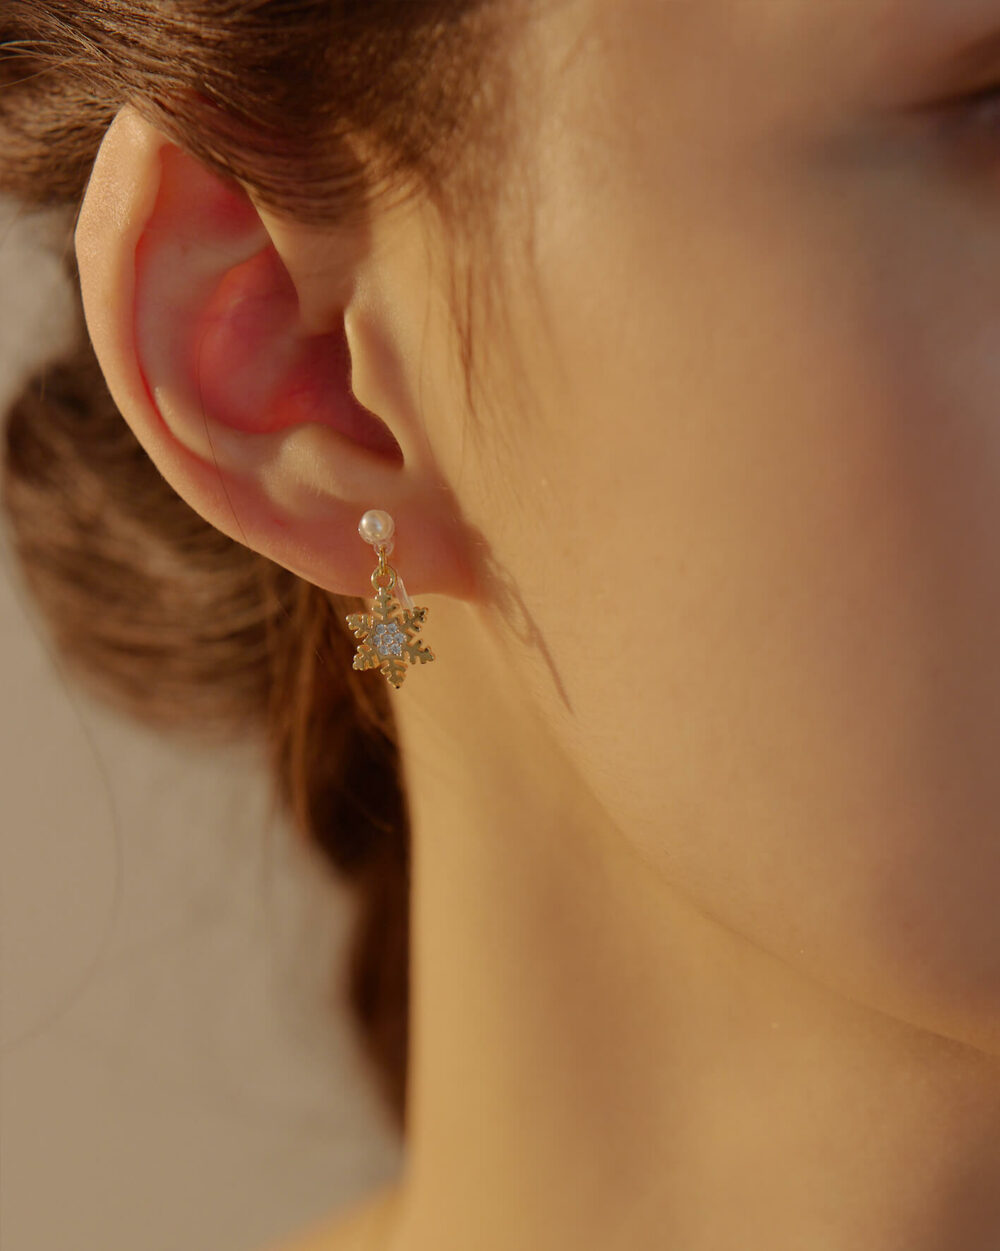 Eco安珂,韓國飾品,韓國耳環,耳針式耳環,矽膠夾耳環,透明耳夾耳環,無痛耳夾耳環,雪花耳環,垂墜矽膠夾耳環